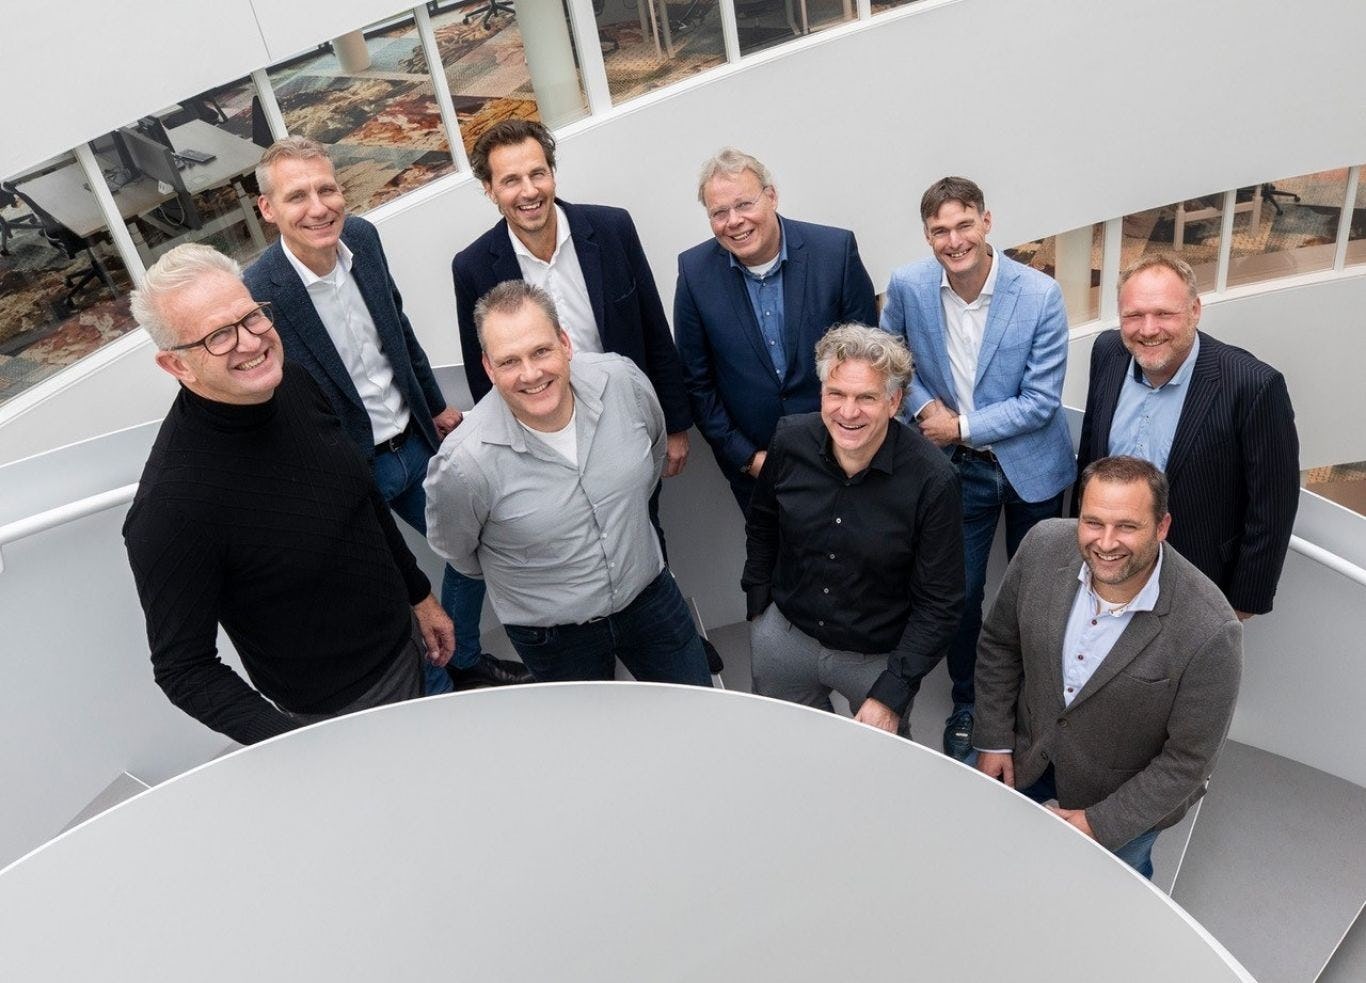 Het management van Floriway met v.l.n.r.: Ab van Marrewijk, Jan Weert Lont, Merijn van Zaal, Eric de Winter, Ton de Winter, Erik Lamers, Toon Vos, Gerbert de Vries, Arnoud de Vries.